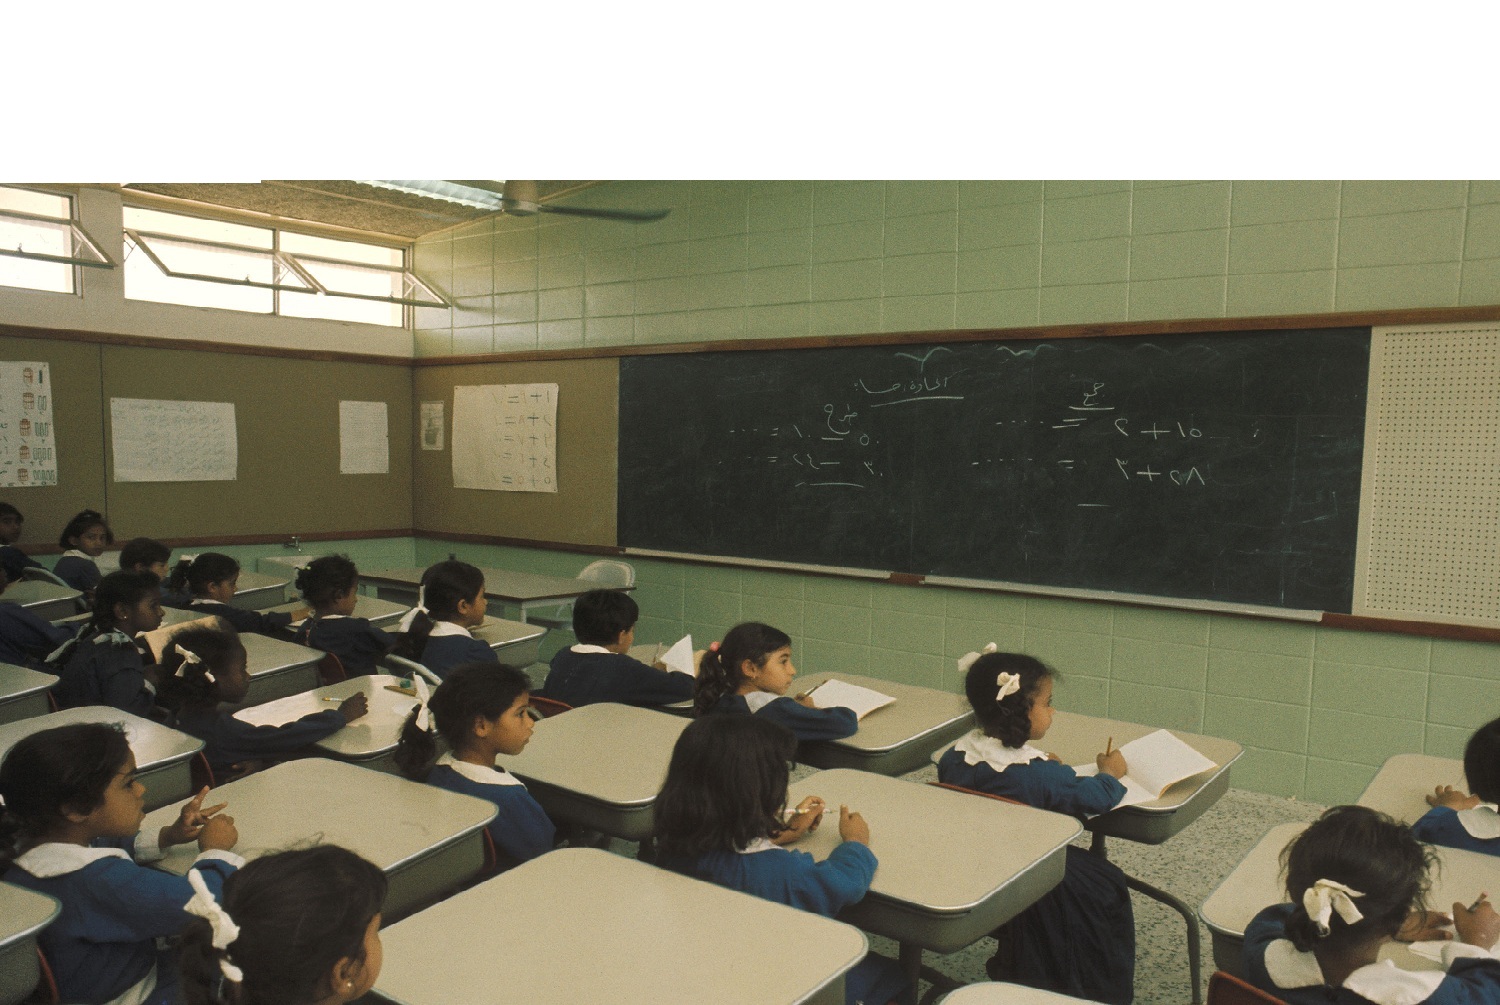 14021_00_0019 - CLASSROOM OF A GIRL’S SCHOOL BUILT BY ARAMCO IN AL-KHOBAR. 1970-2 (1).jpg